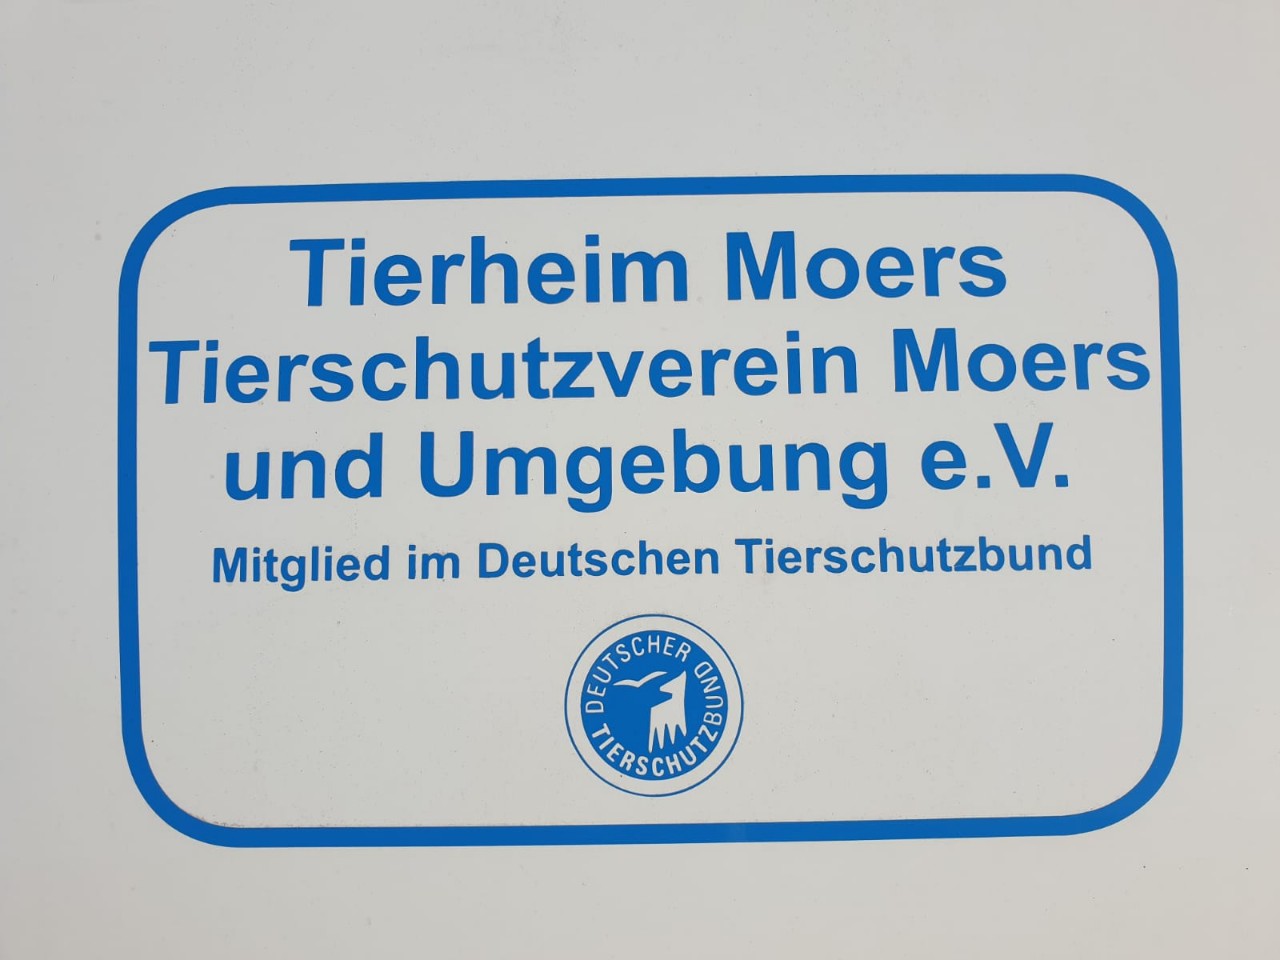 Tierheim Moers # (14)